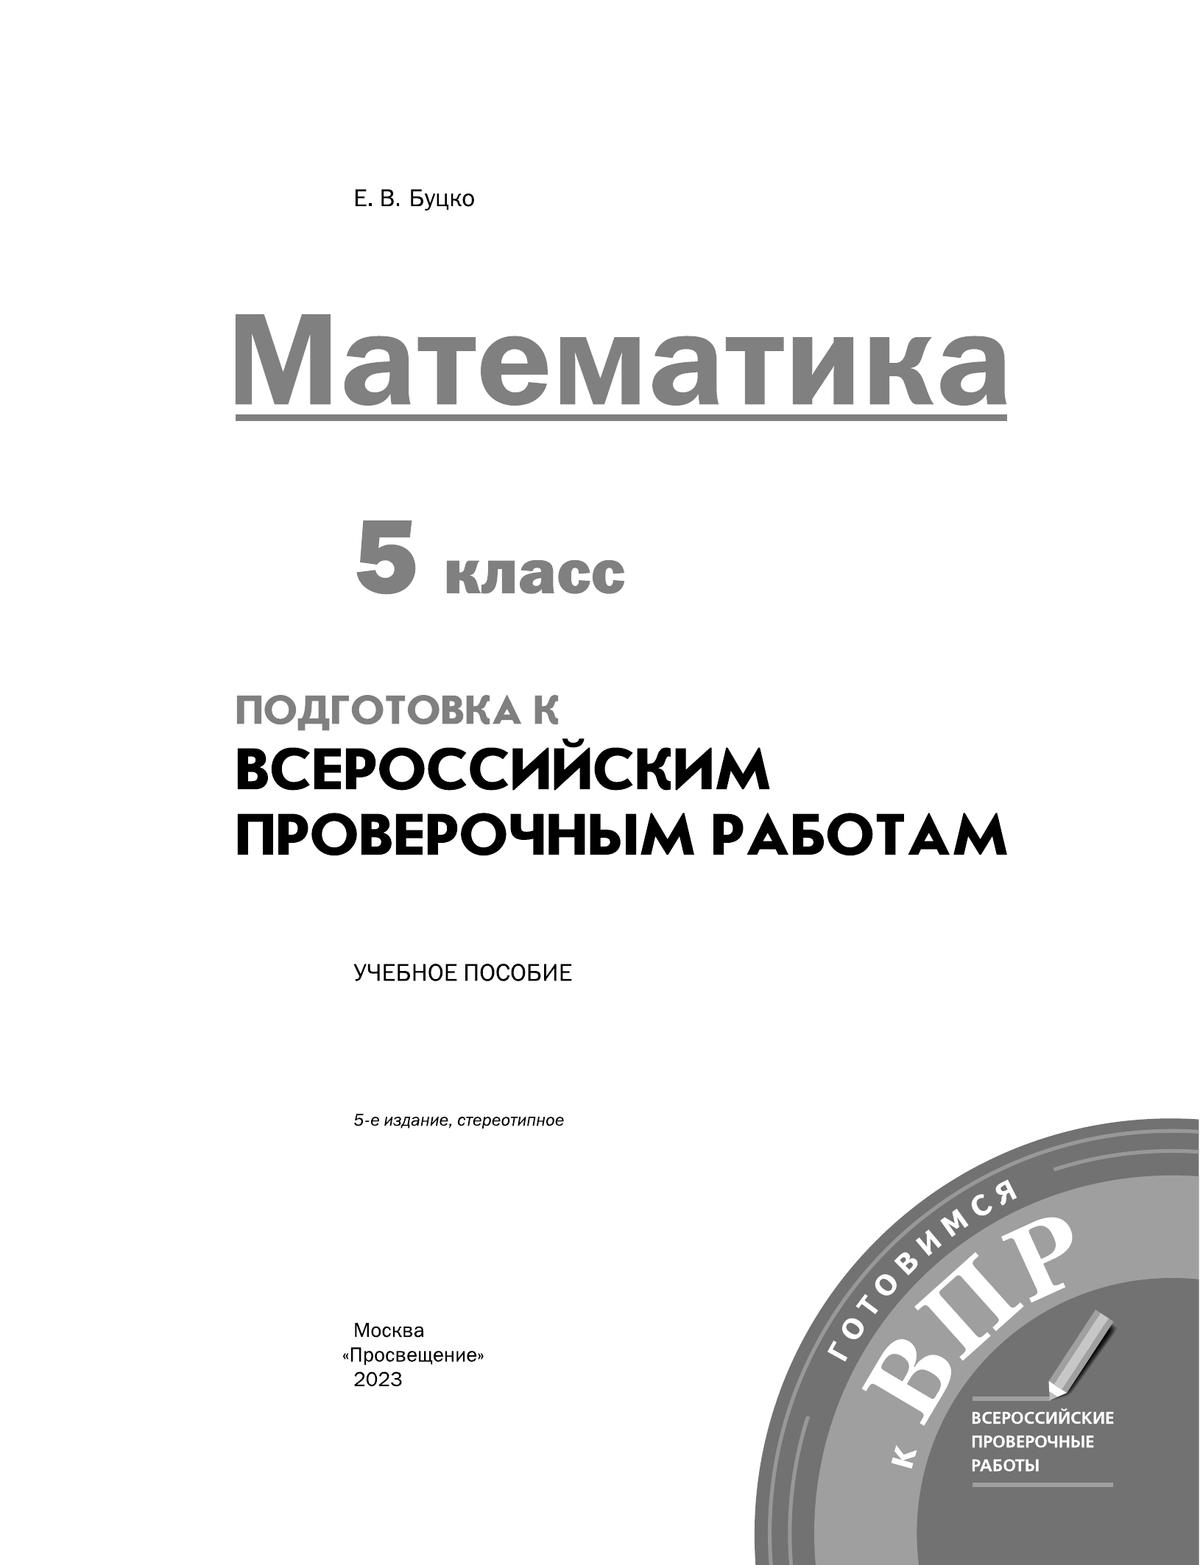 Математика. 5 класс. Подготовка к всероссийским проверочным работам (ВПР) 6